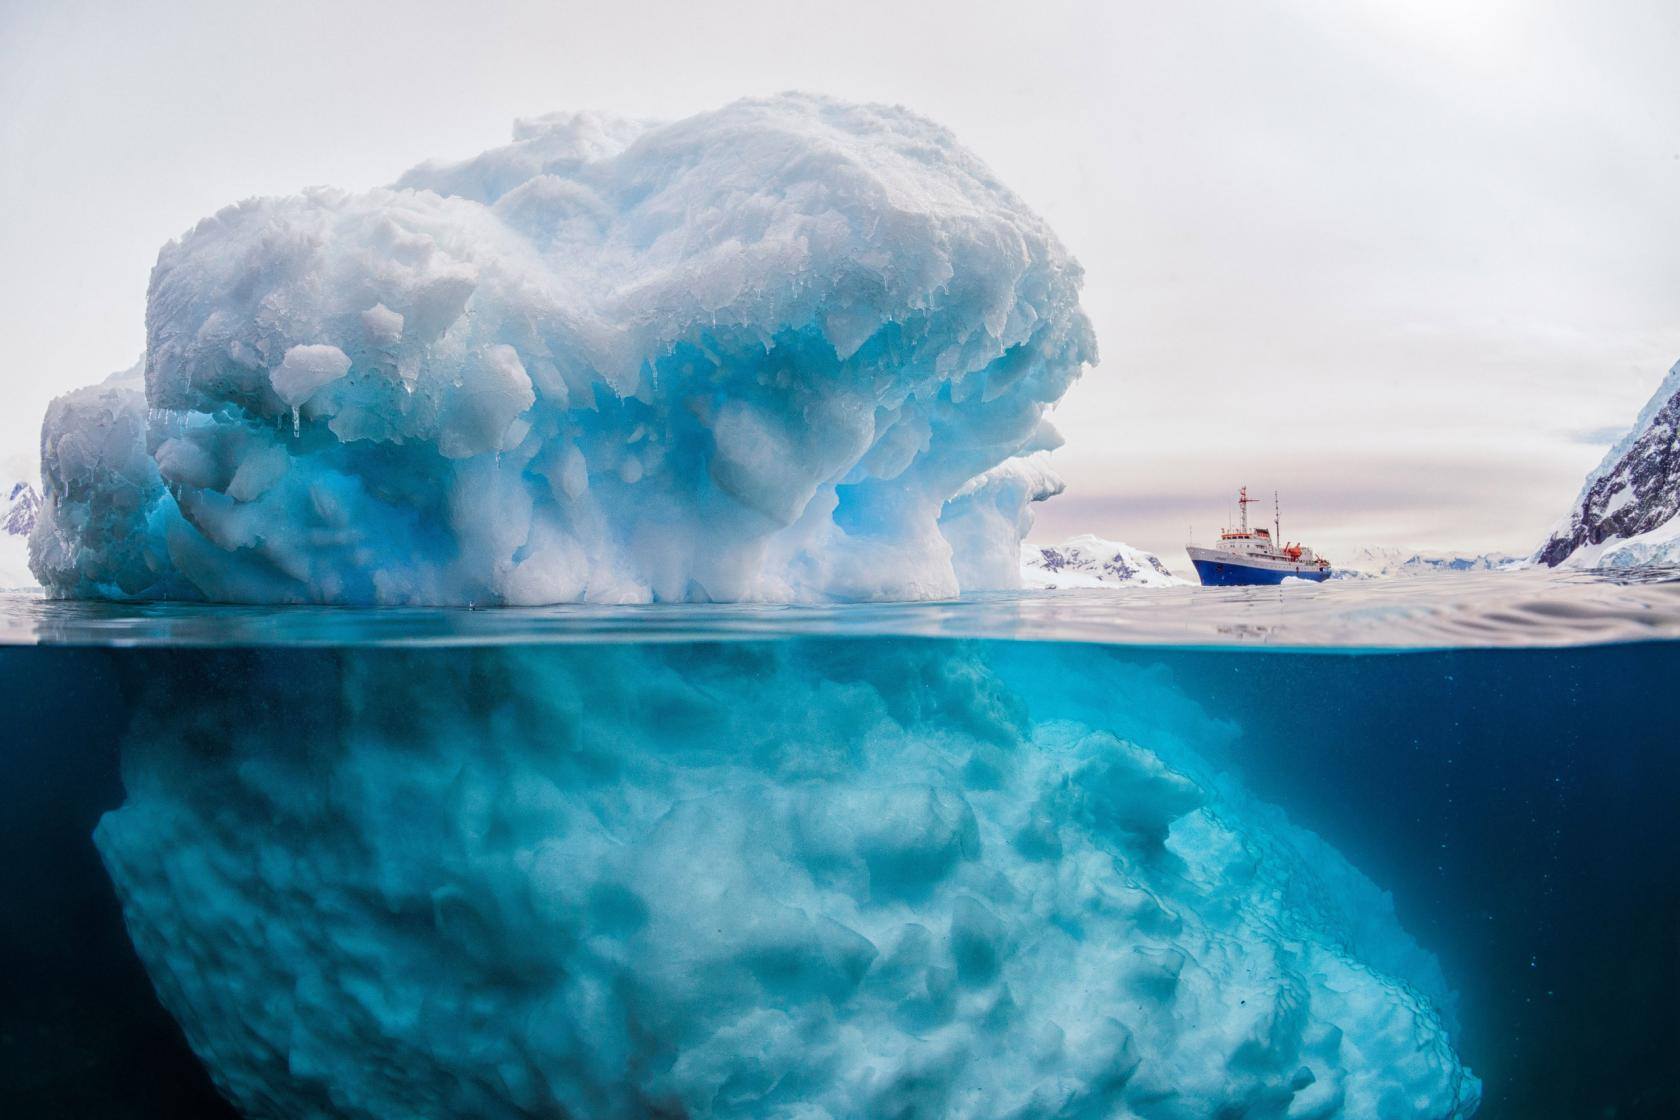 Foto de Rick Du Boisson publicada por Agenda Antártica